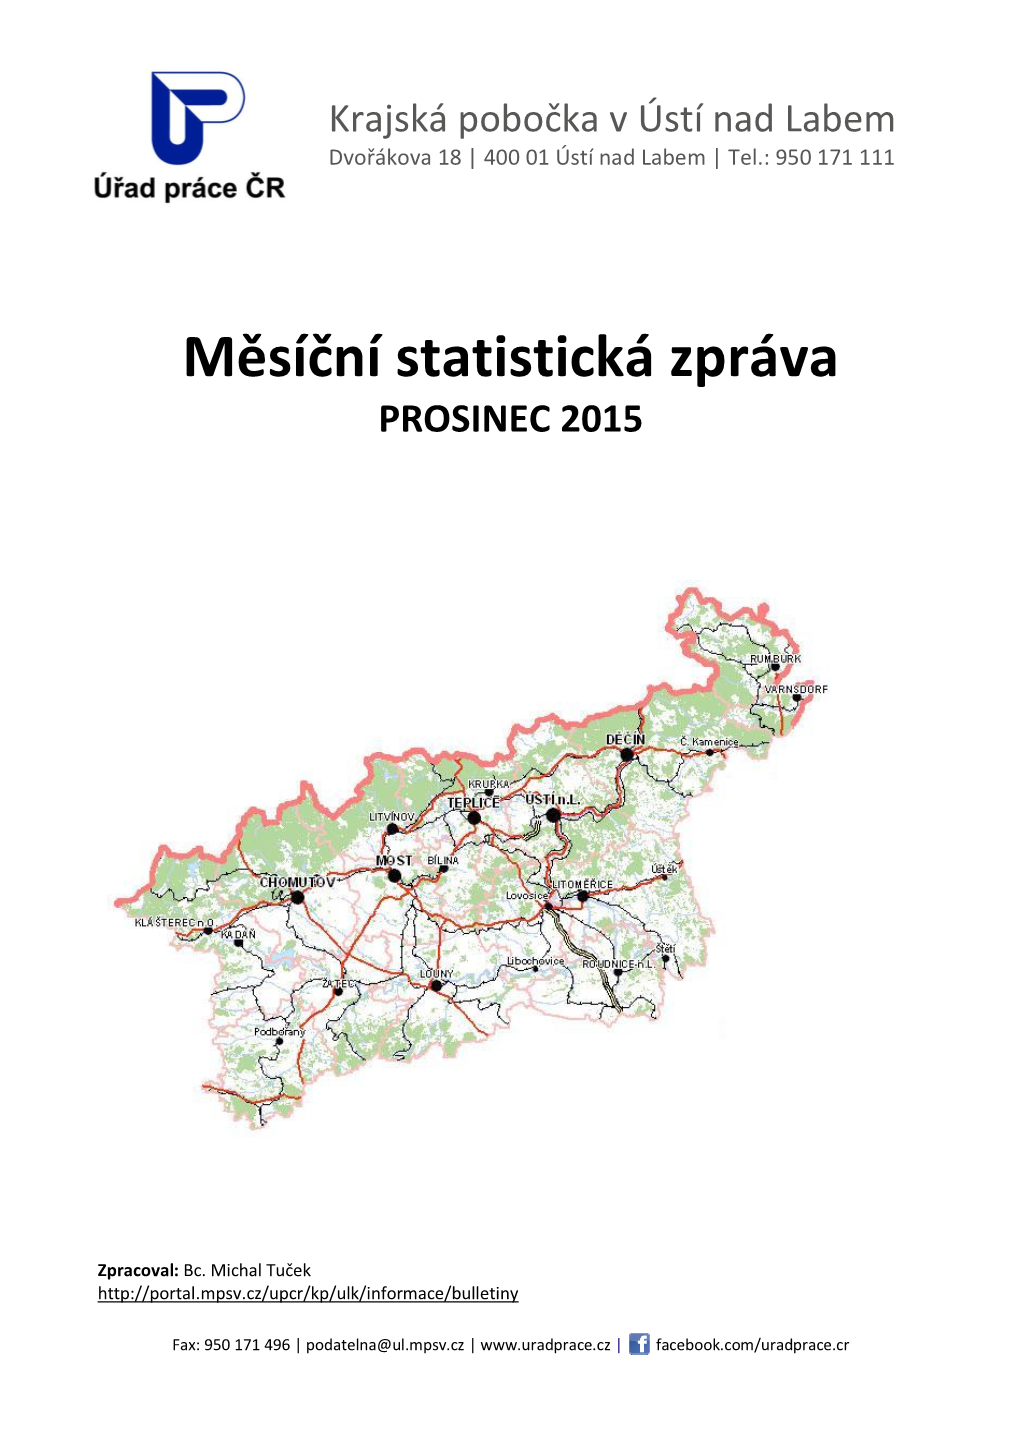 Mesicni ULK 12 2015.Pdf (1.01